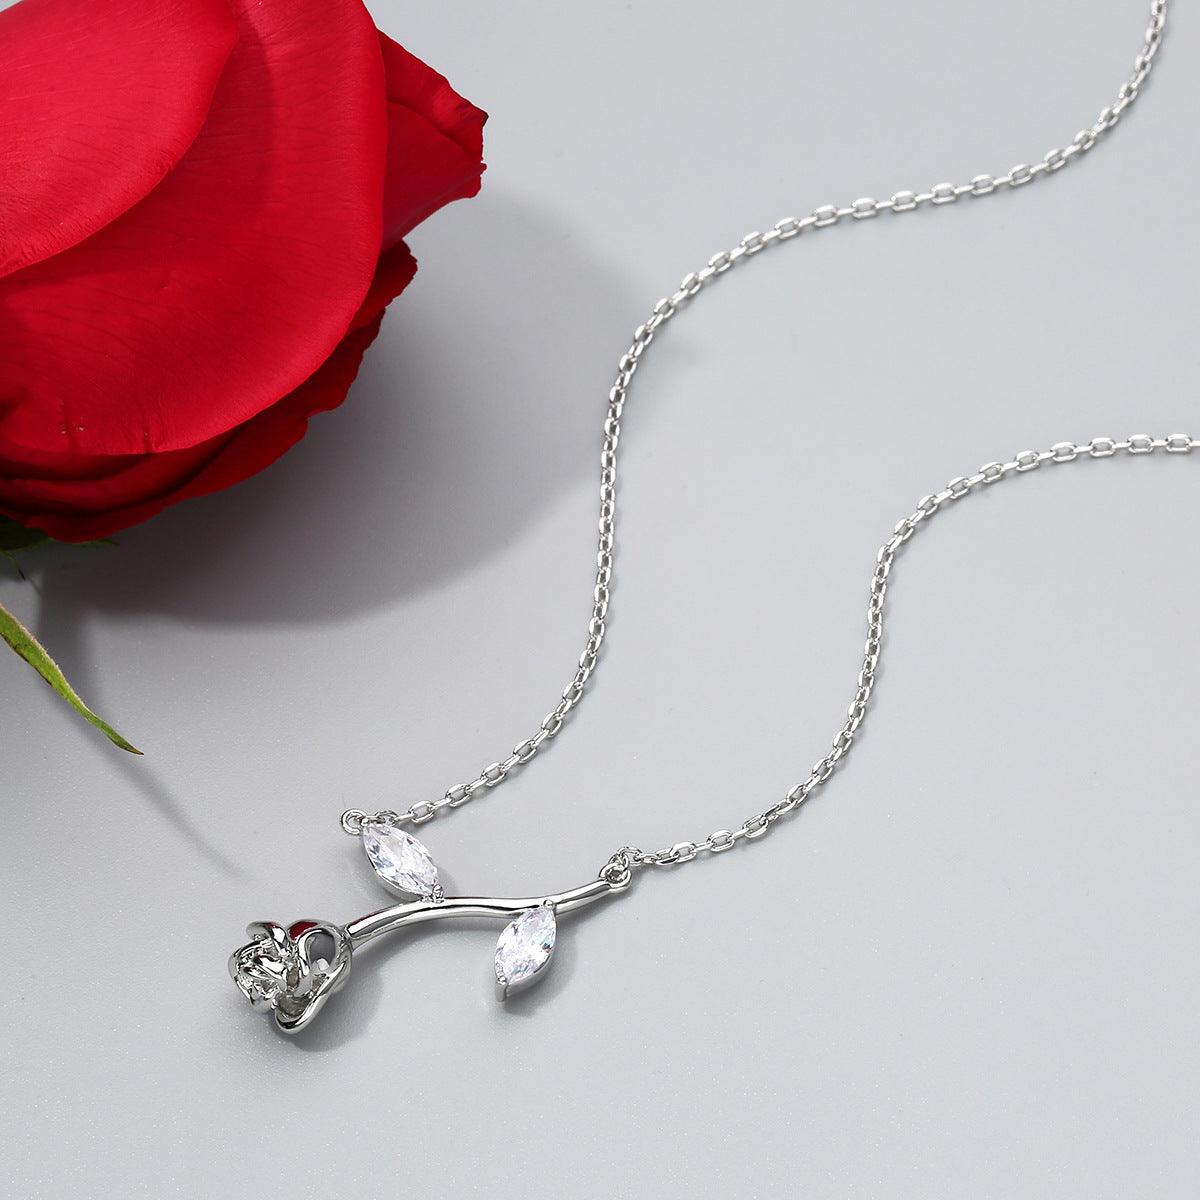 Exquisite Rose Pendant Necklace